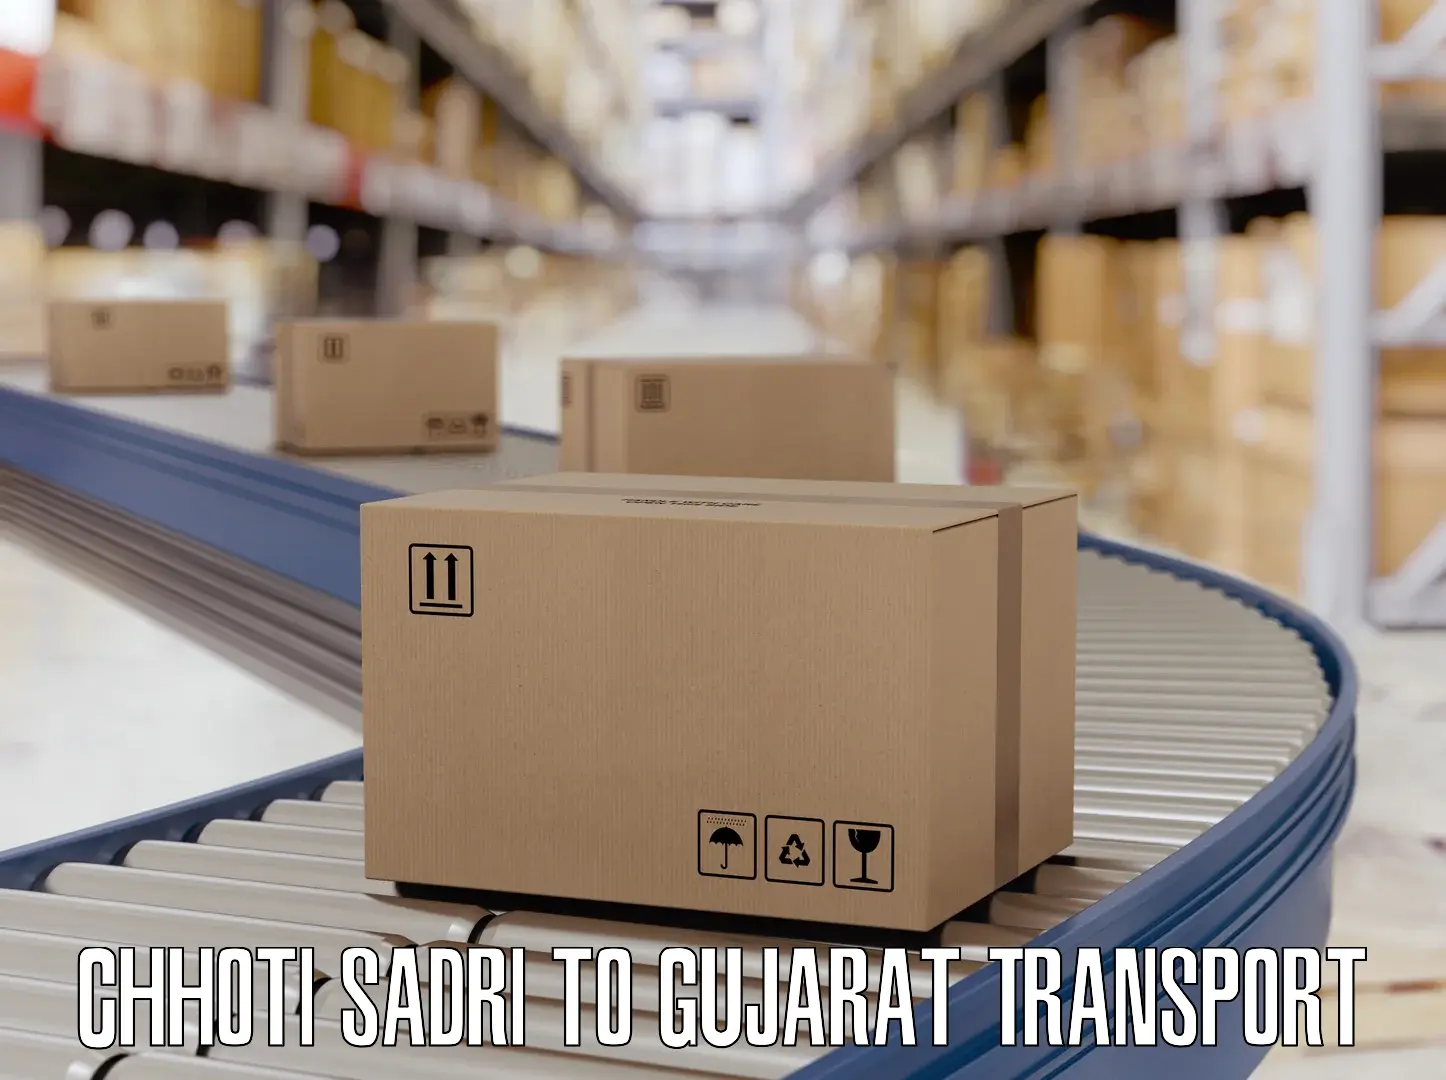 Online transport booking Chhoti Sadri to Gujarat